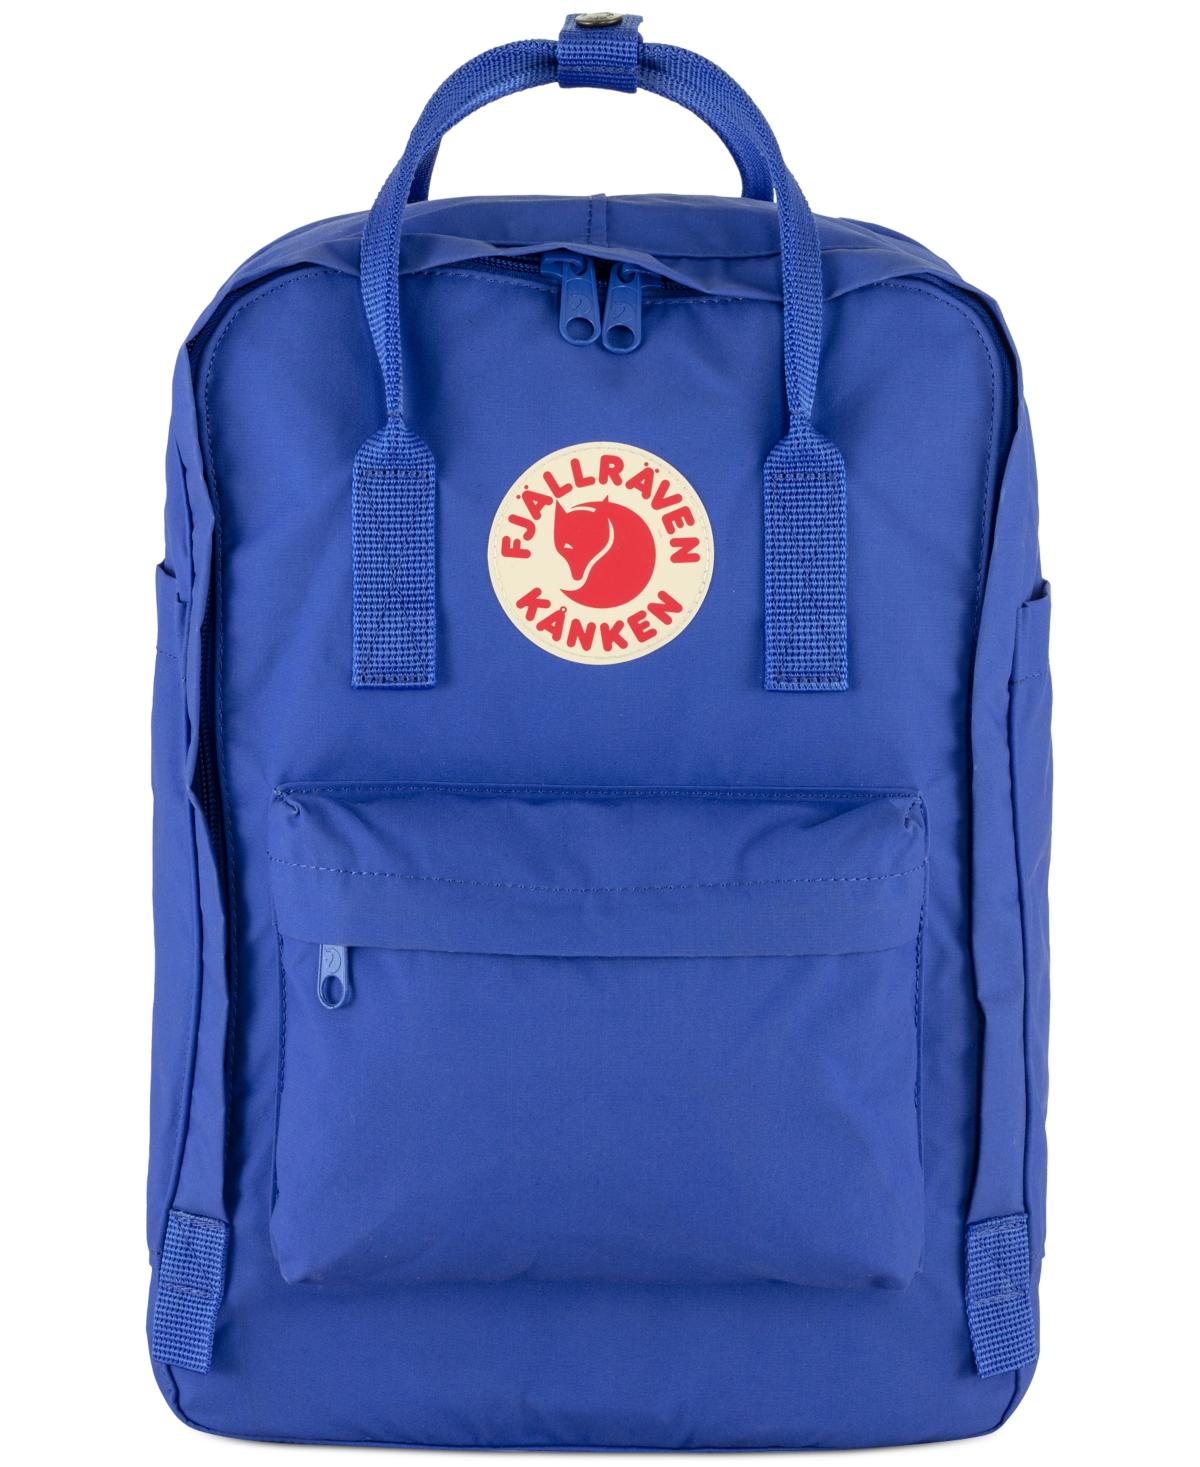 Kanken 15" Laptop Backpack - COBALT BLUE